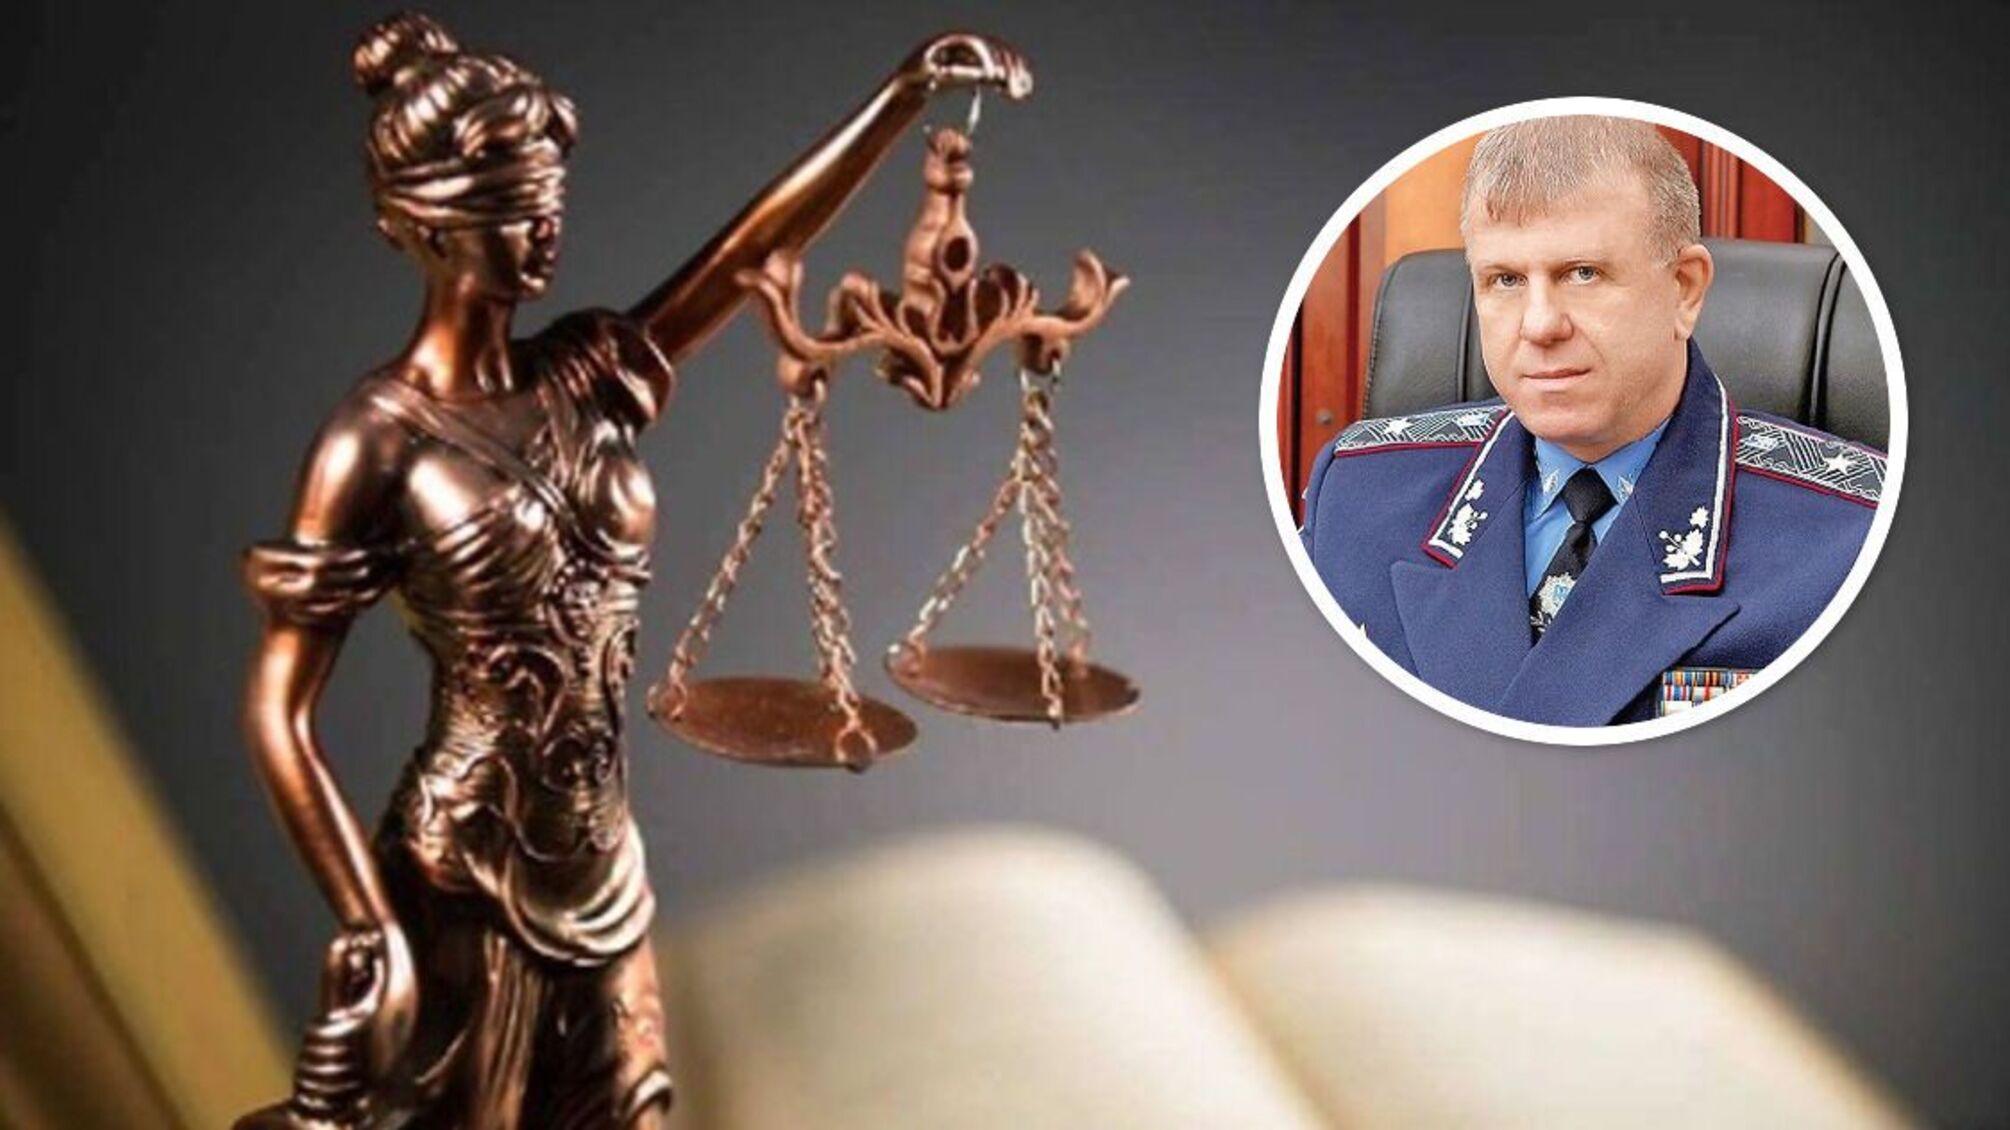 Экс-глава полиции Херсона Литвин пойдет под суд, ему грозит пожизненное за сотрудничество с ФСБ